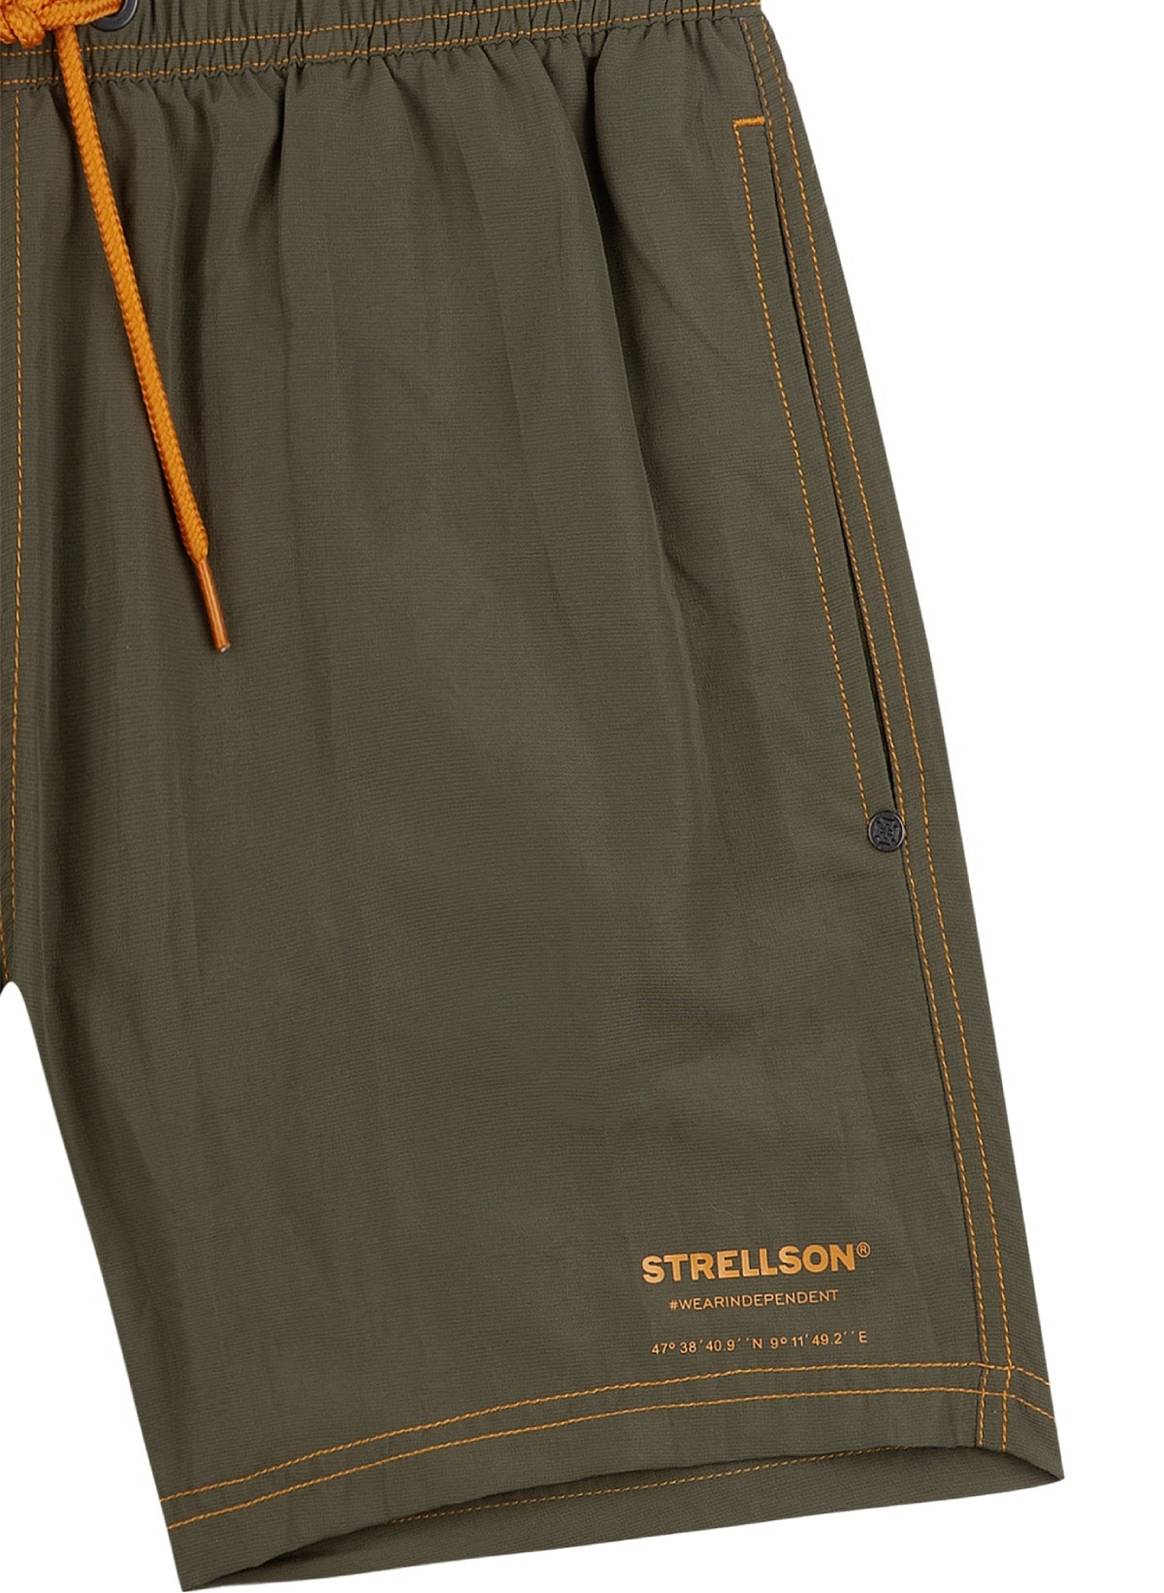 Strellson Bodywear & Beachwear Spring/Summer 2022